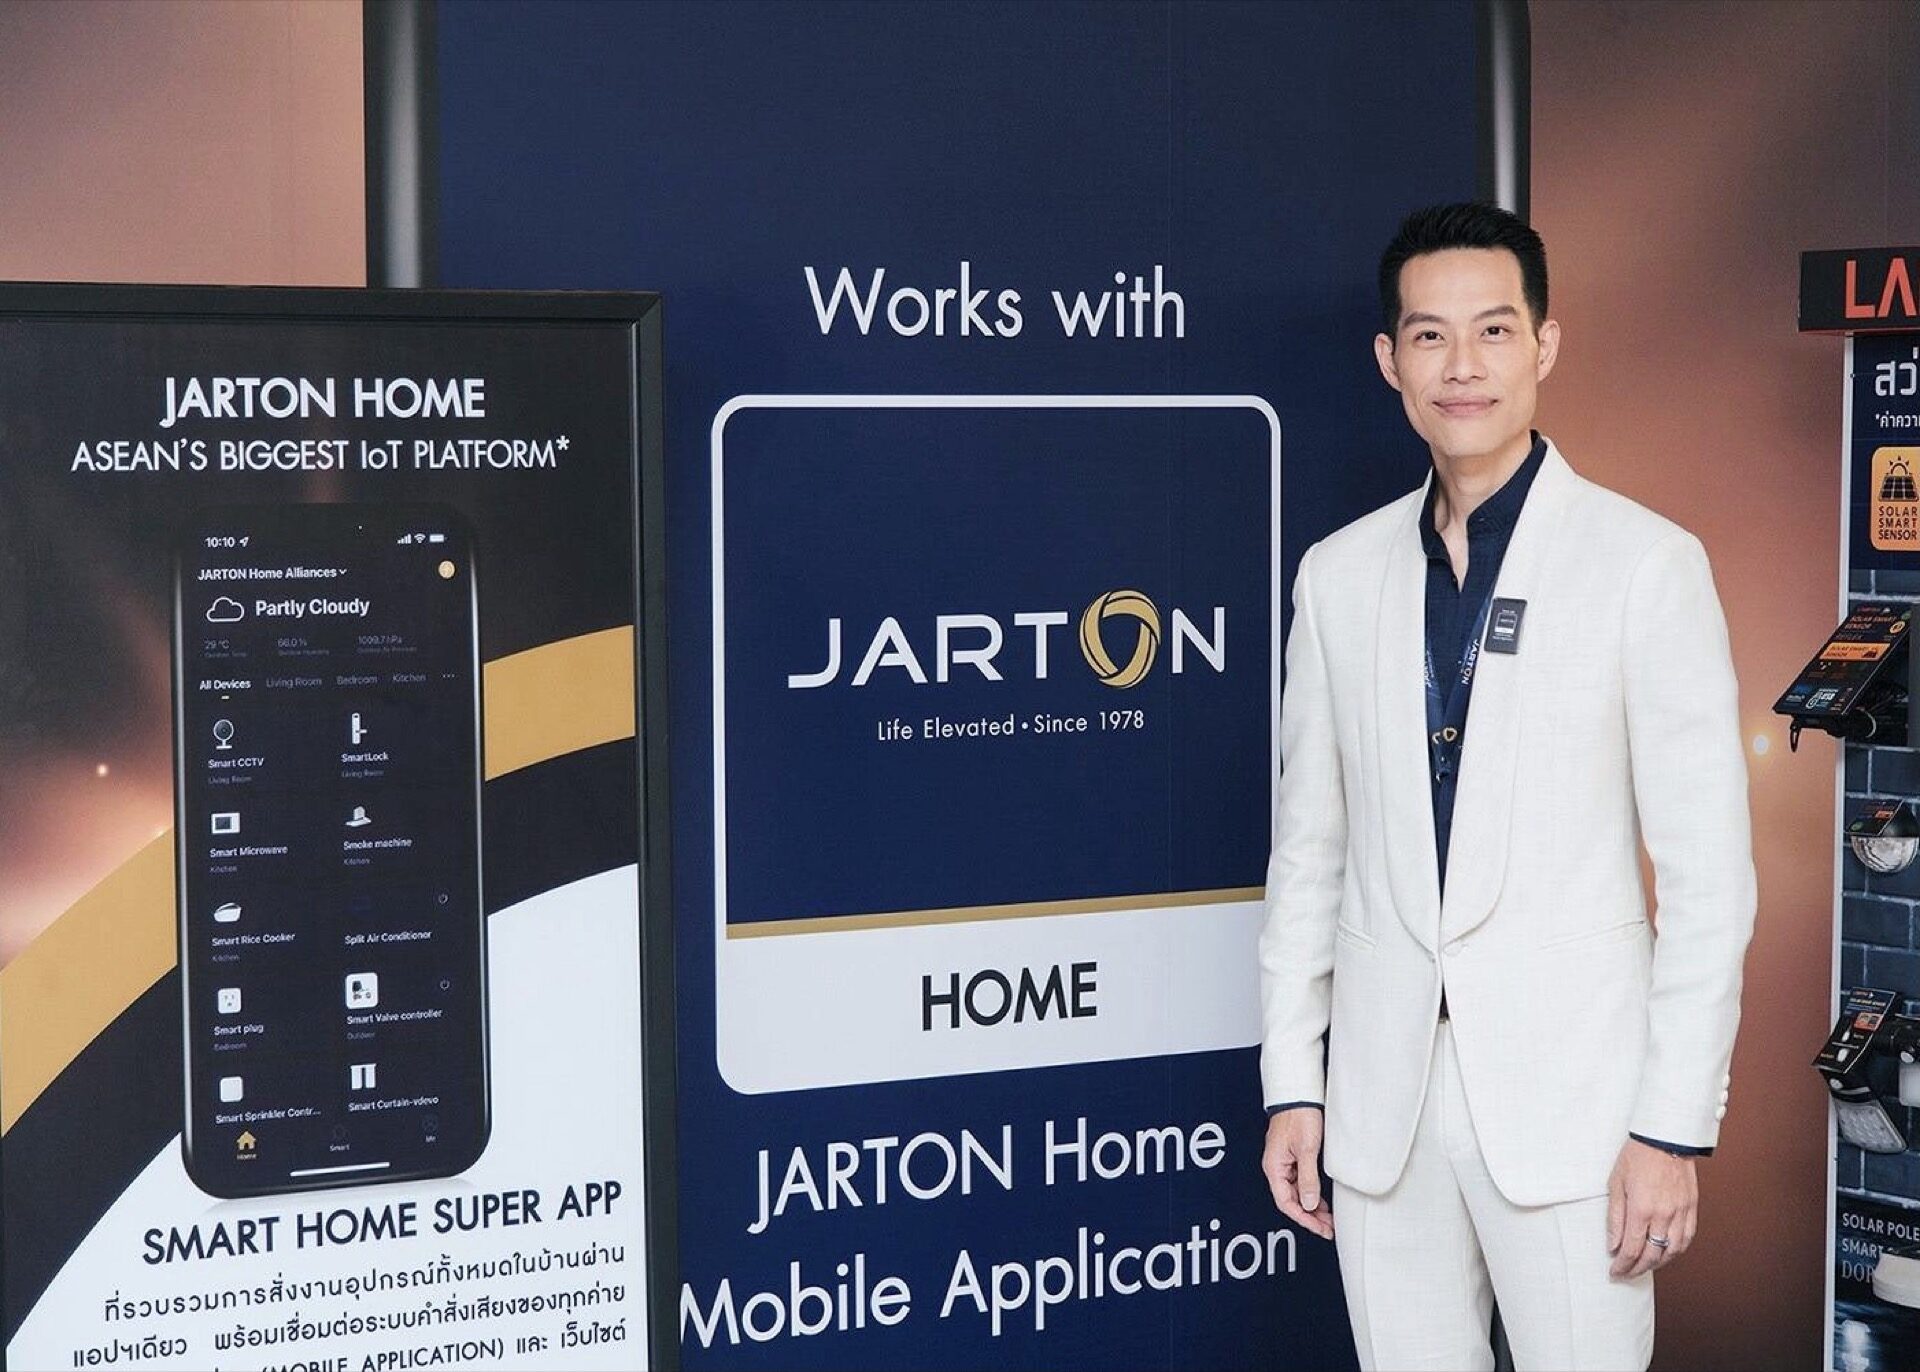 "จาร์ตัน" เปิดตัว "JARTON Home" แพลตฟอร์ม IoT ครบวงจรใหญ่สุดในอาเซียนมั่นใจดันตลาด Smart Home โต 3-5เท่าใน 2 ปี